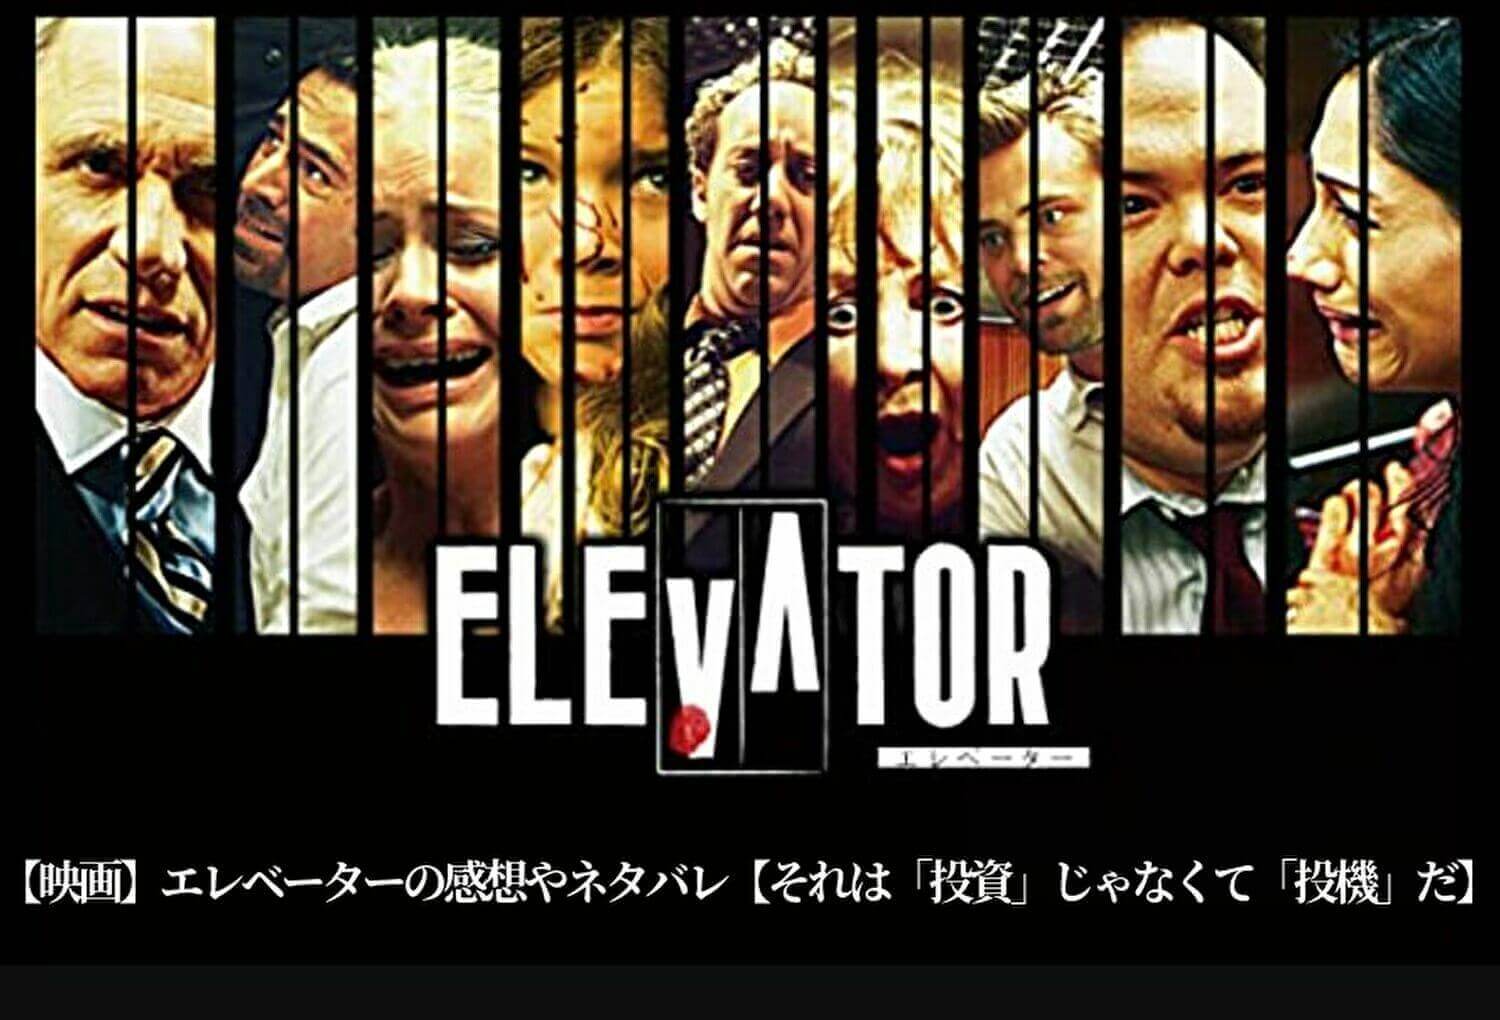 【映画】エレベーターの感想やネタバレ【それは投資じゃなく投機だ】